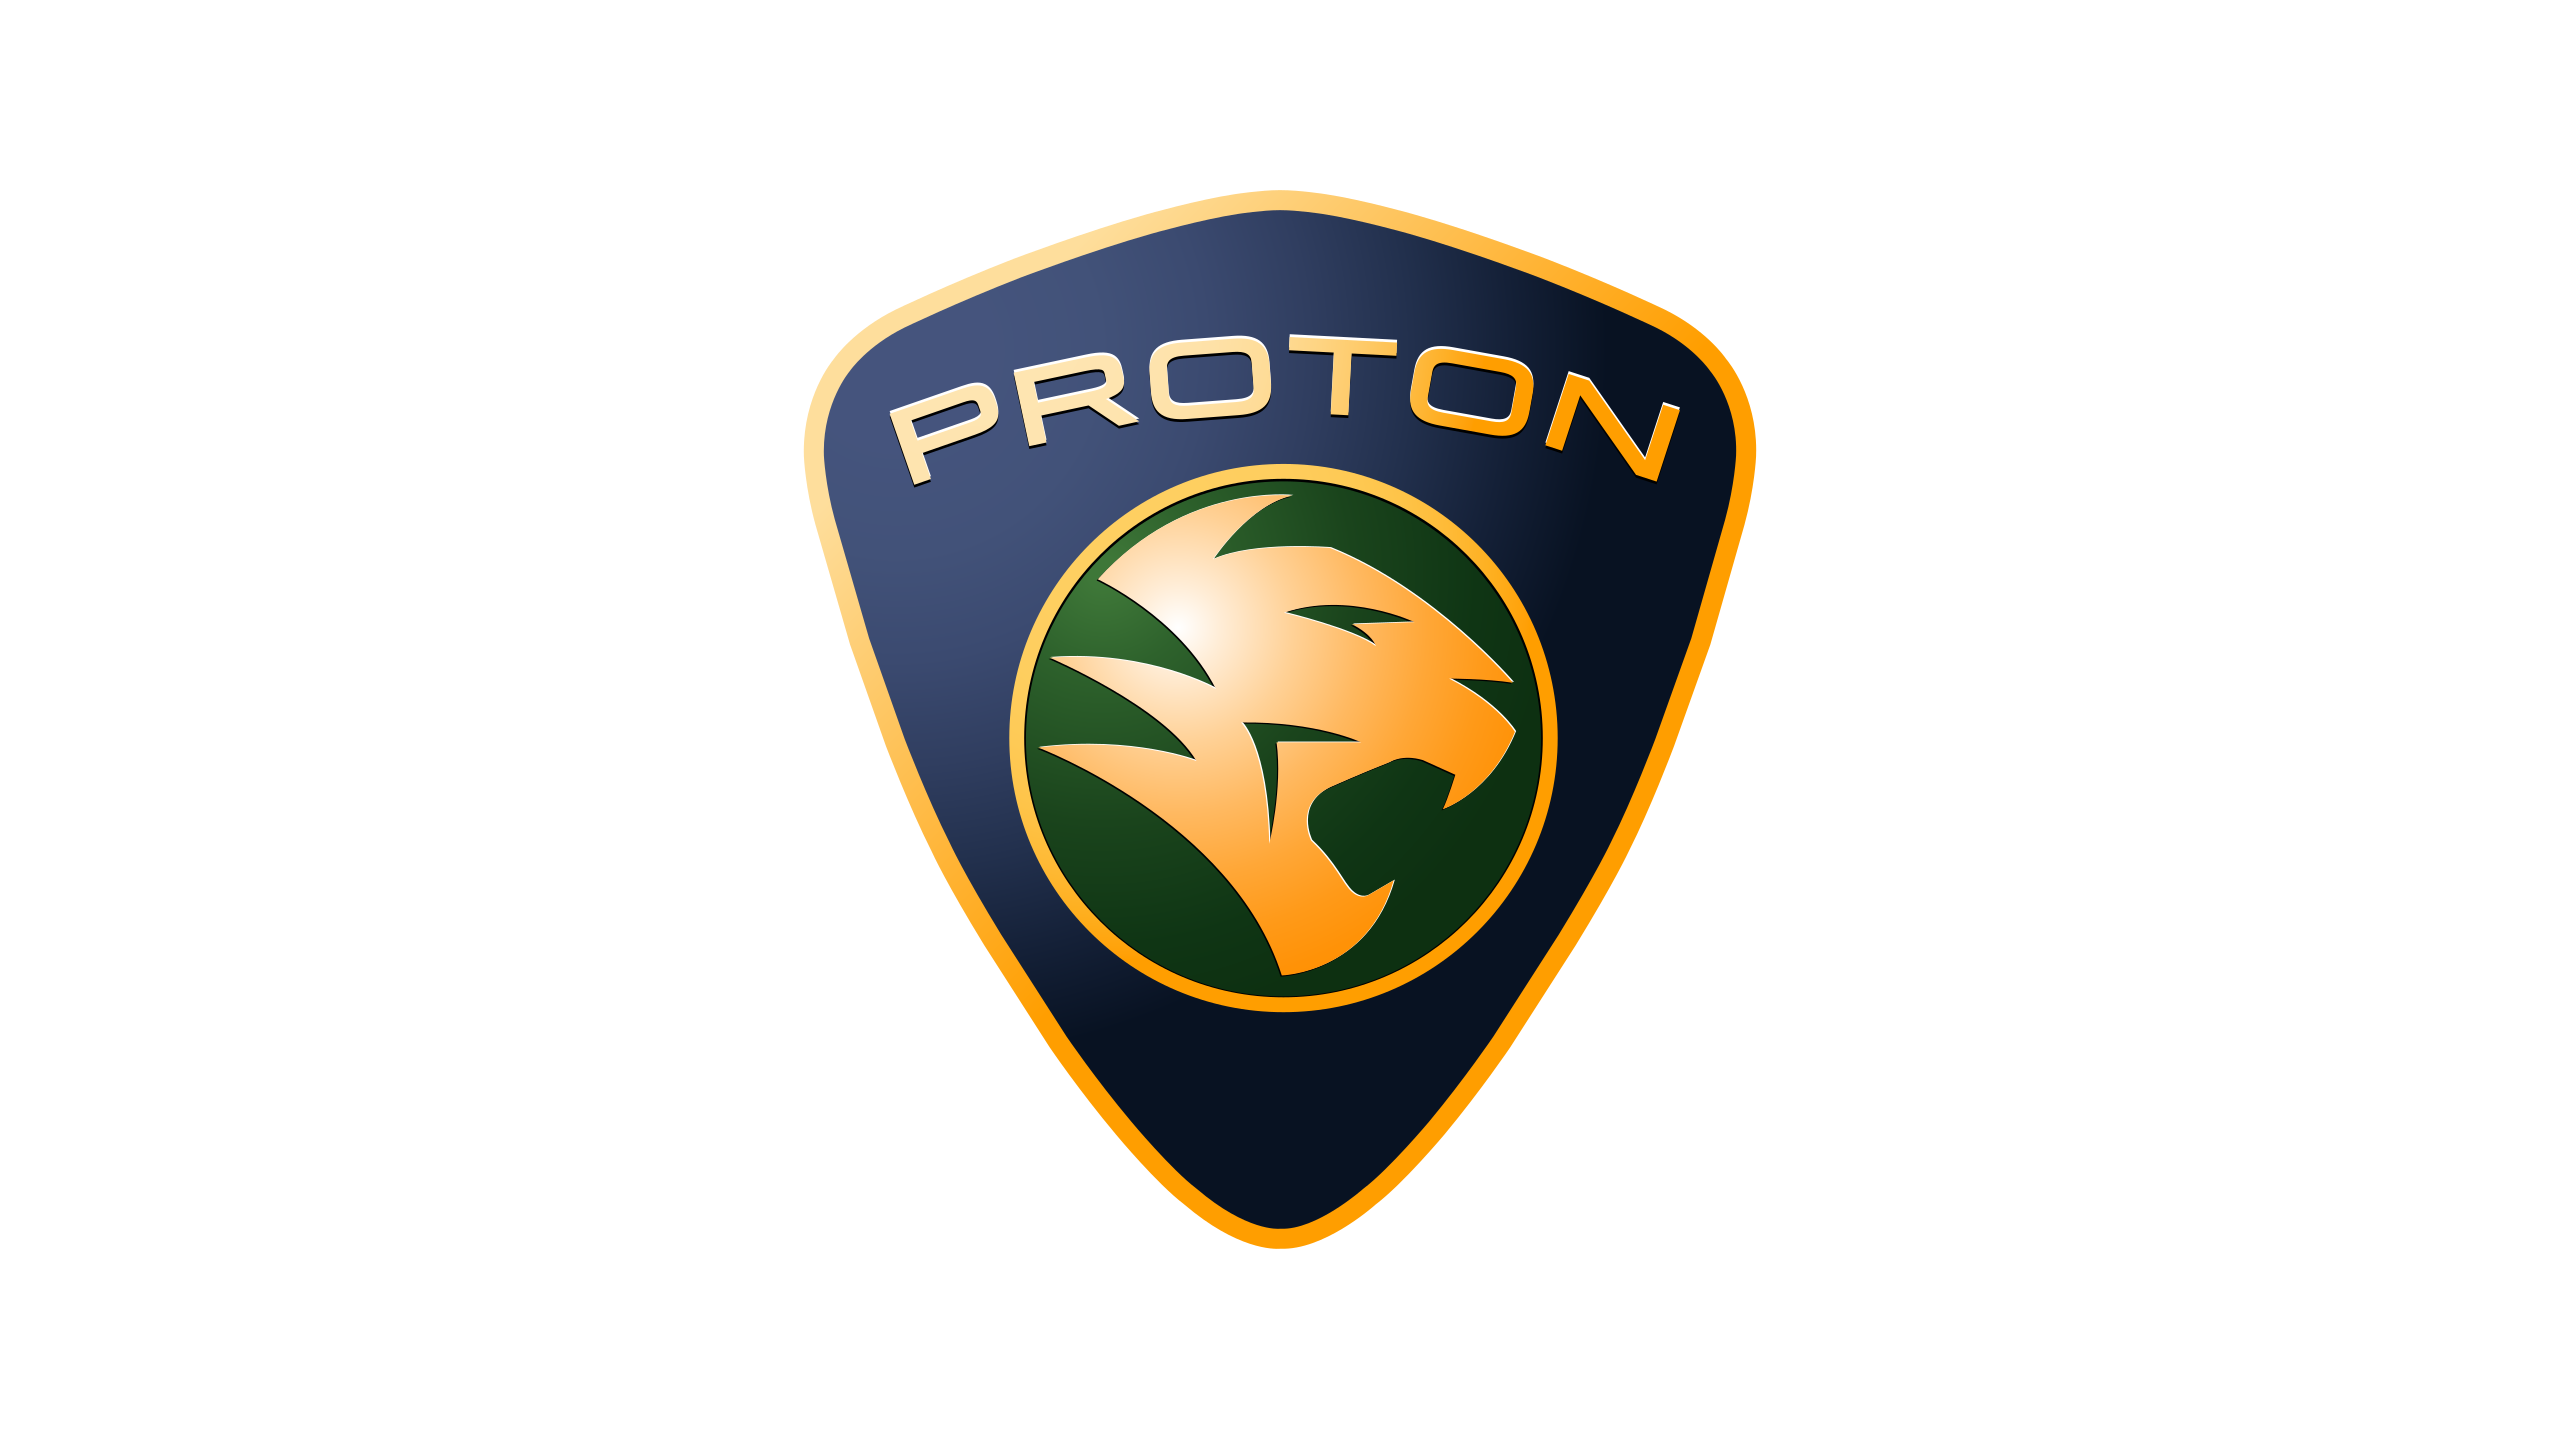 Proton-logo-2000-2560x1440.png